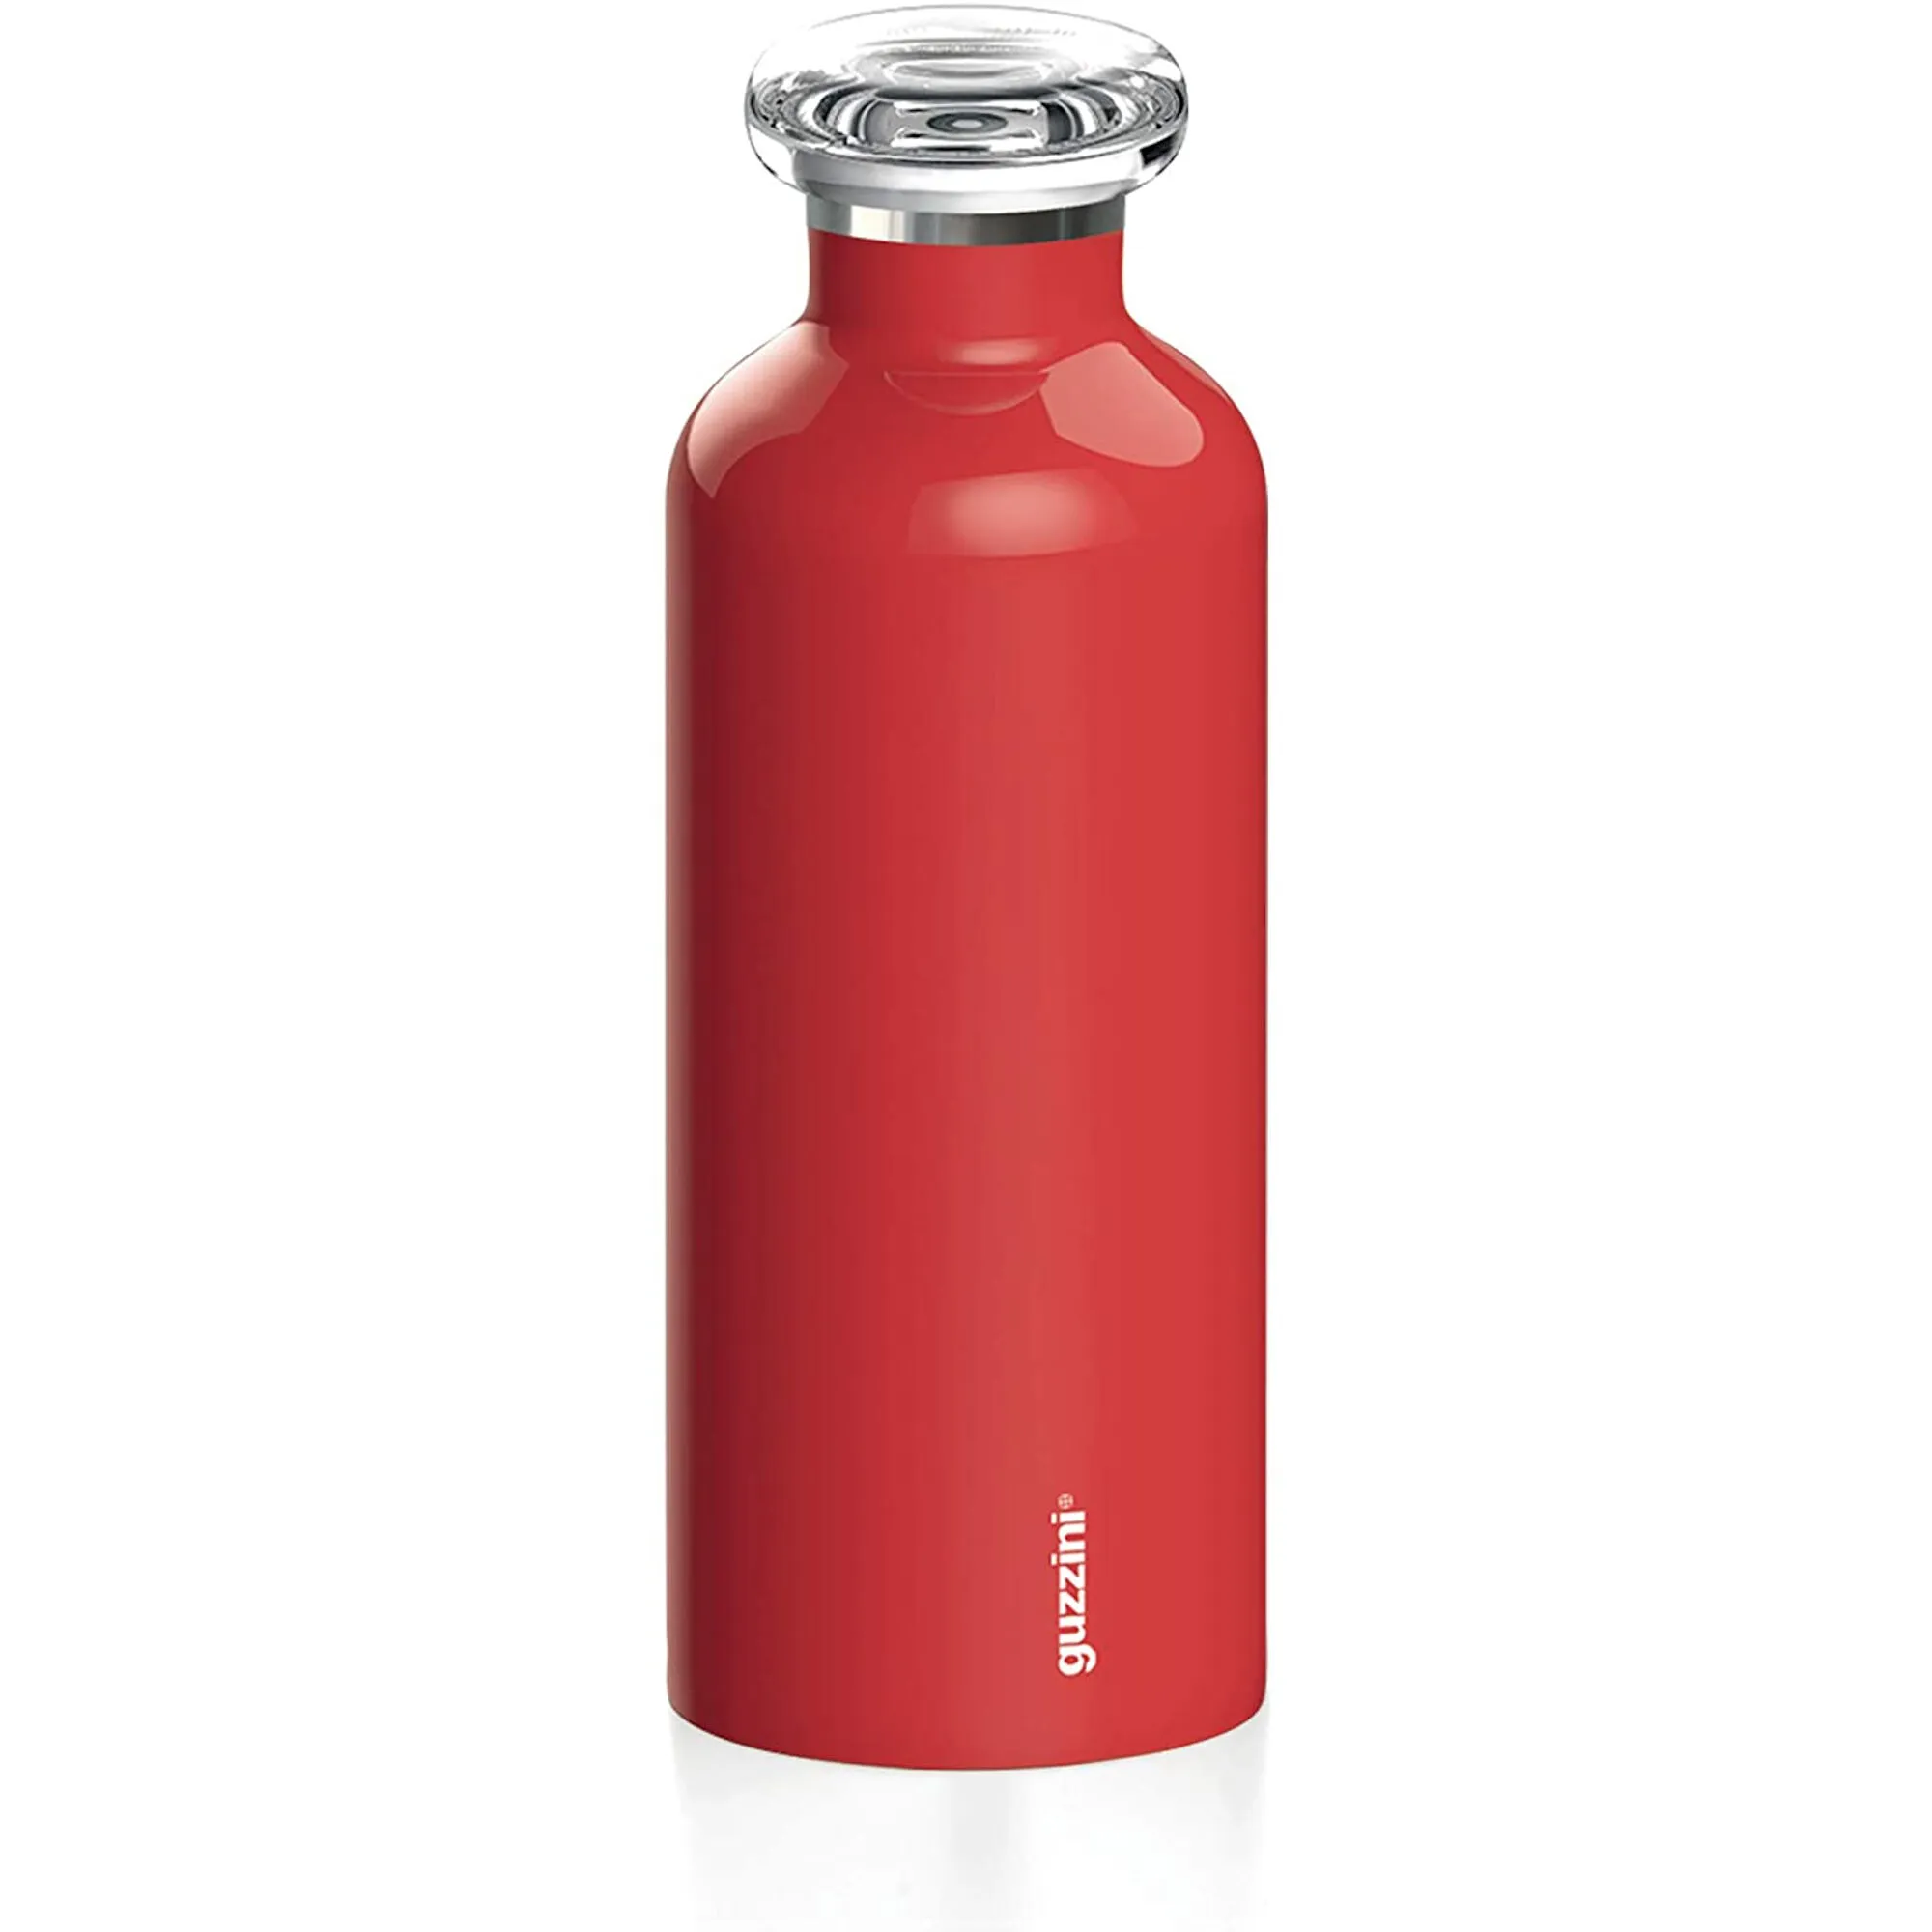 Borraccia termica in acciaio contenitore per liquidi 7,3xh21,2 cm 500 cc Mantiene 12 ore Caldo 24 ore Freddo colore Rosso brillante